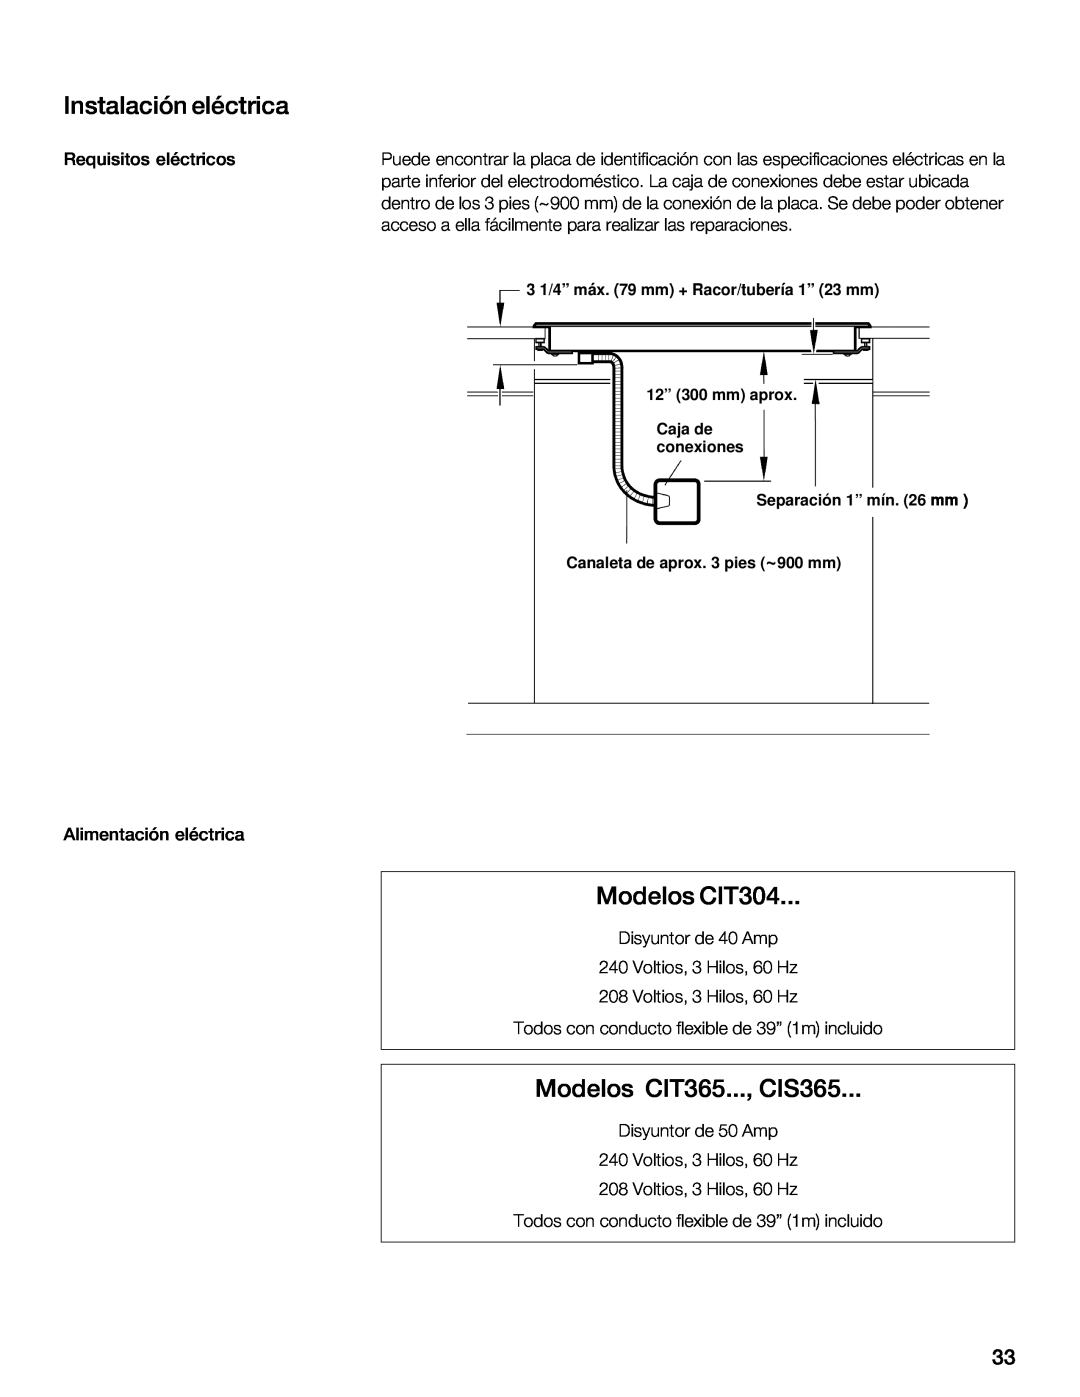 Thermador installation instructions Instalación eléctrica, Modelos CIT304, Modelos CIT365..., CIS365 